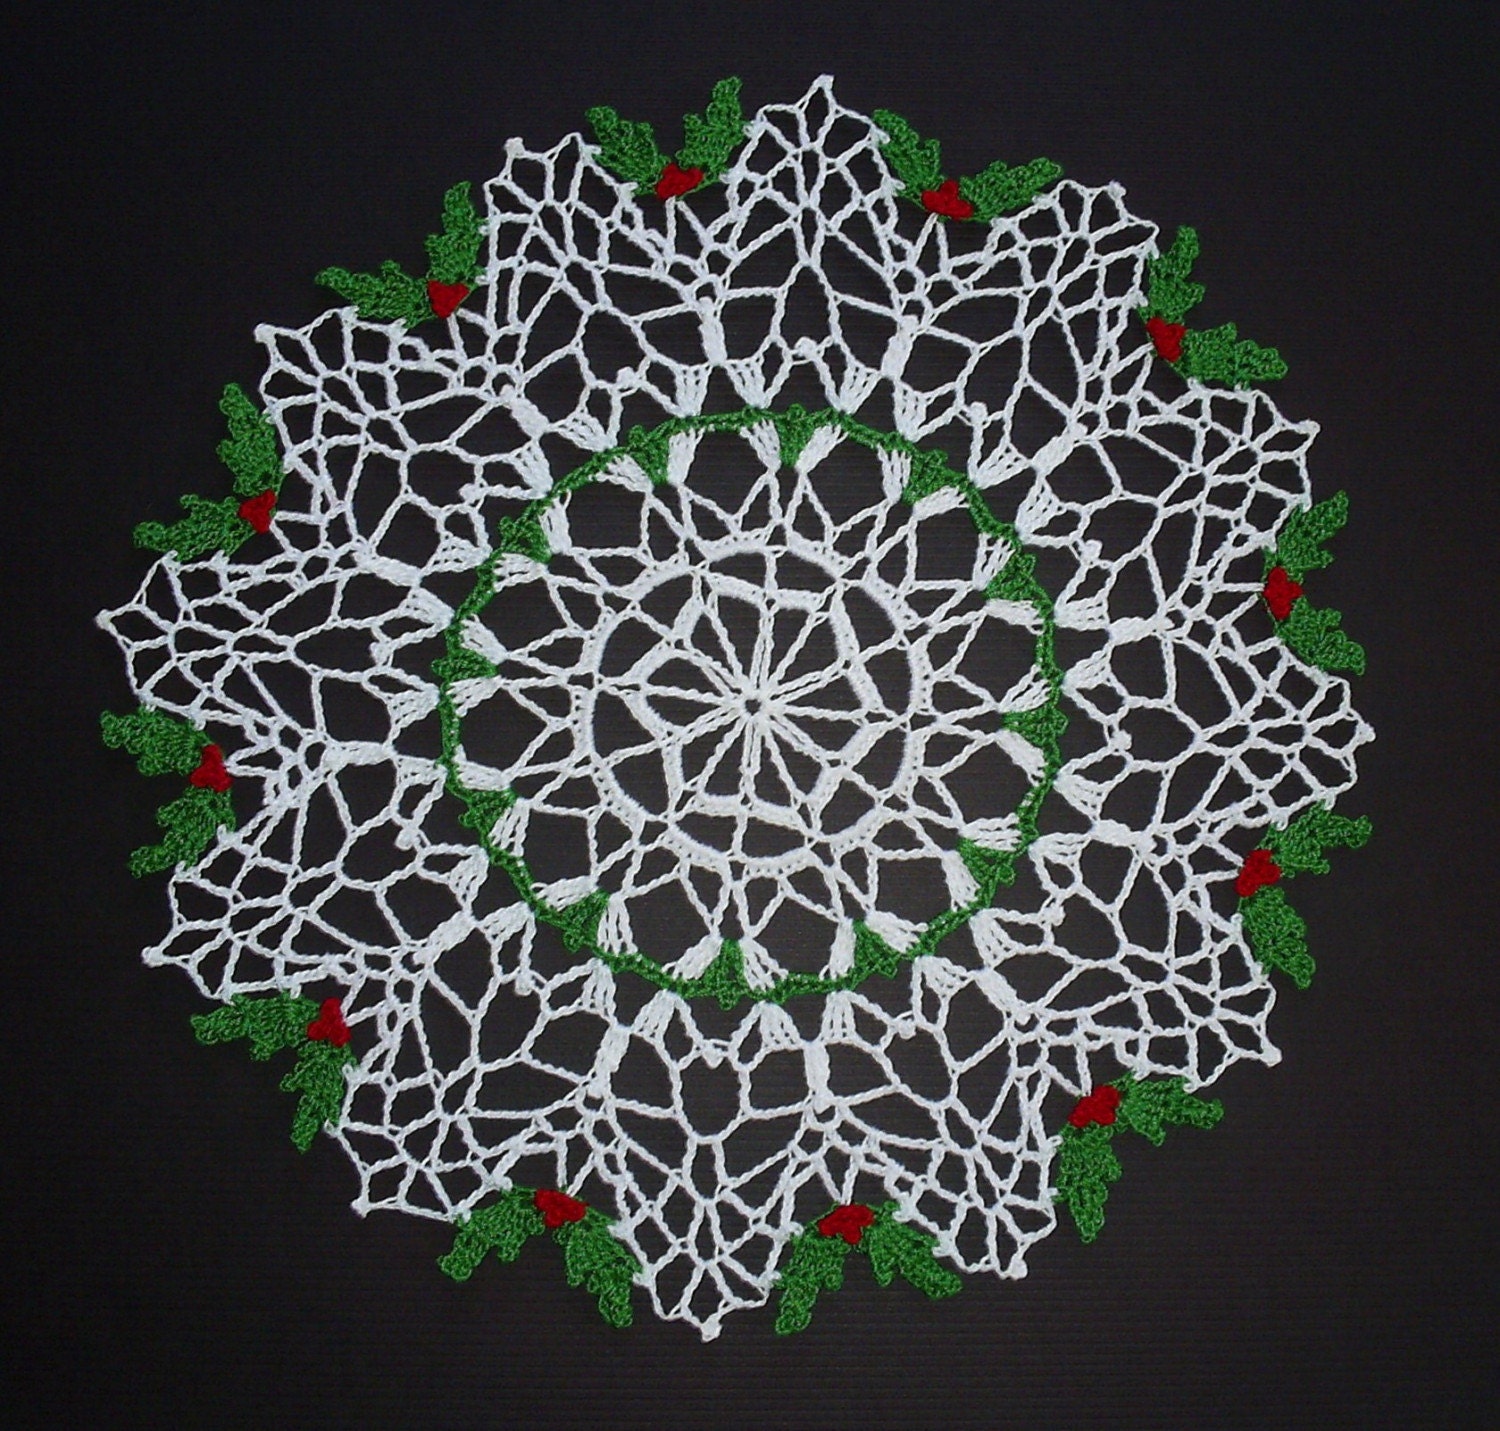 Crochet Holiday Doily Patterns